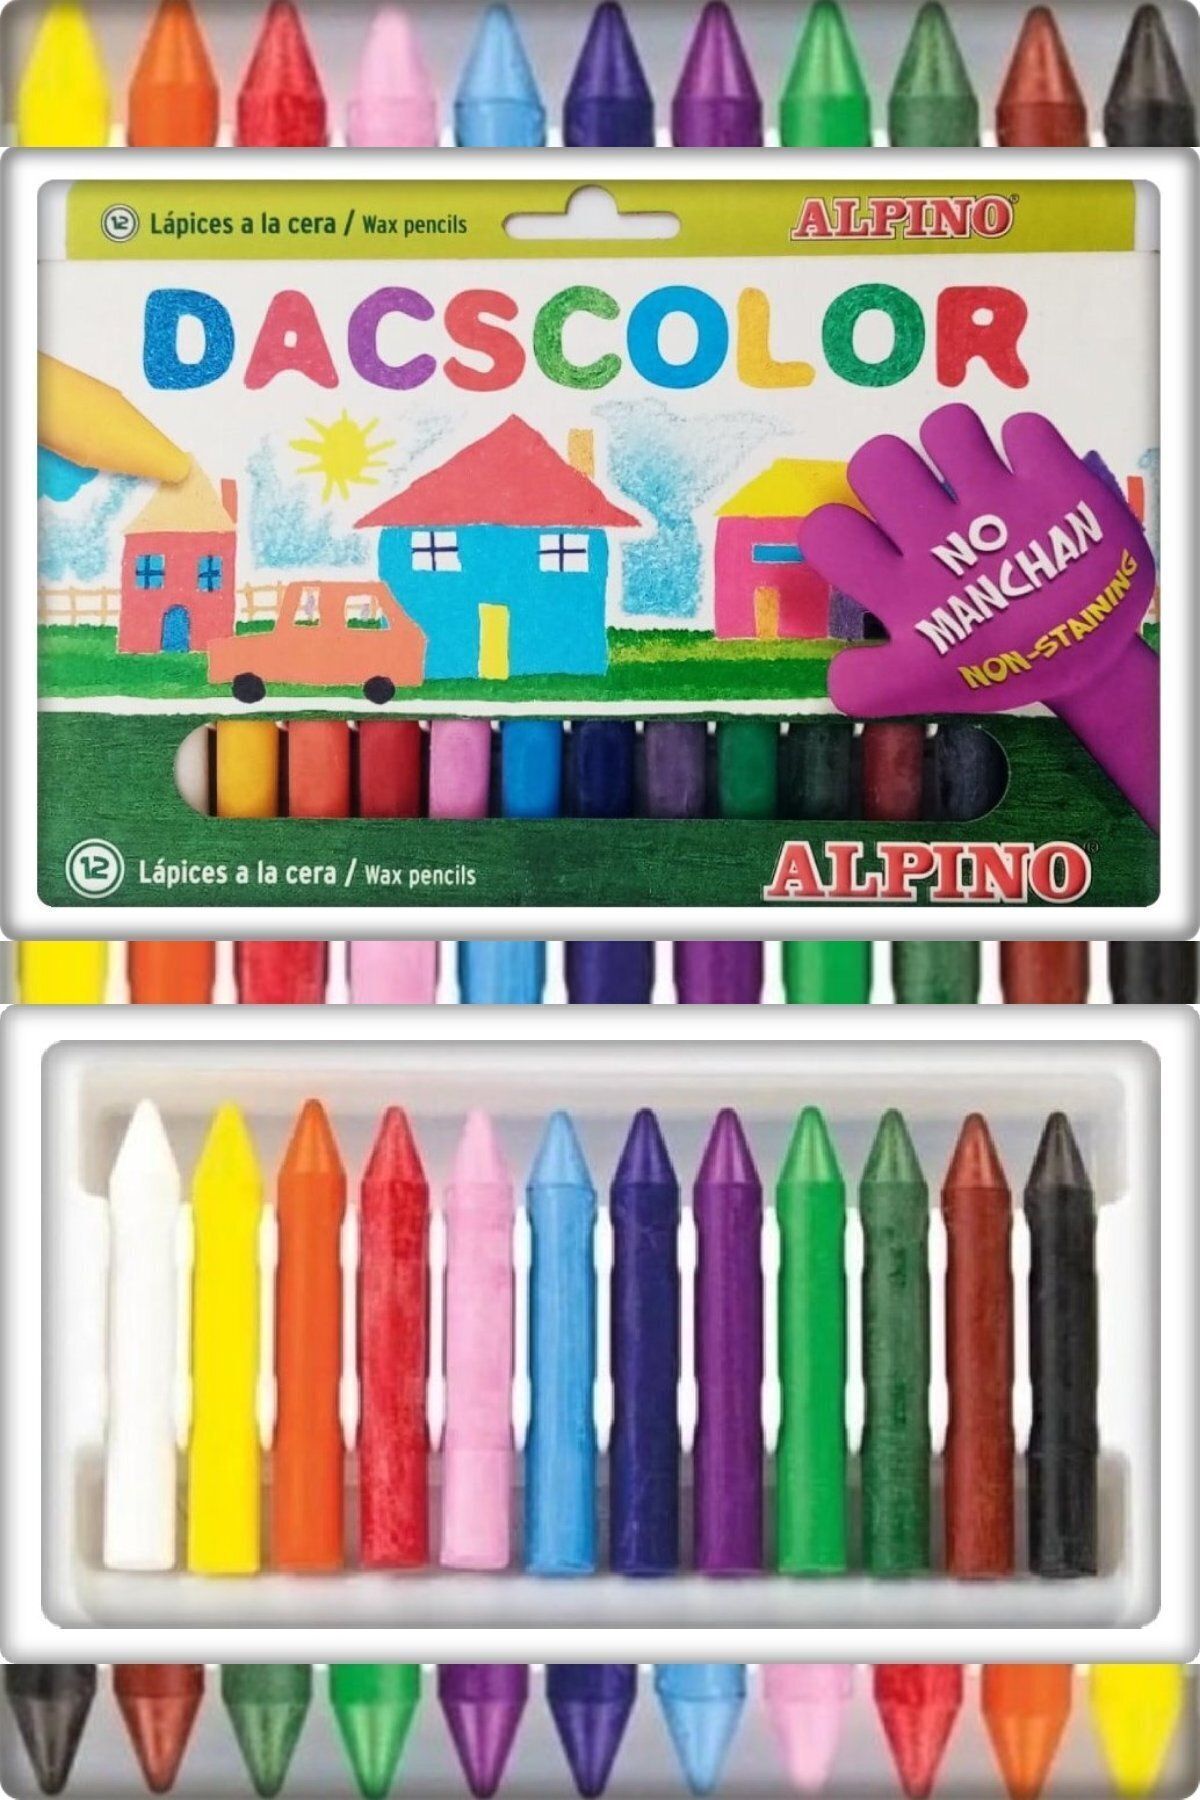 Alpino Dacscolor Mum Pastel Boya 12 Renk 1 Adet 21x12 Cm (TAN EXPRESS ÜRÜNÜDÜR)